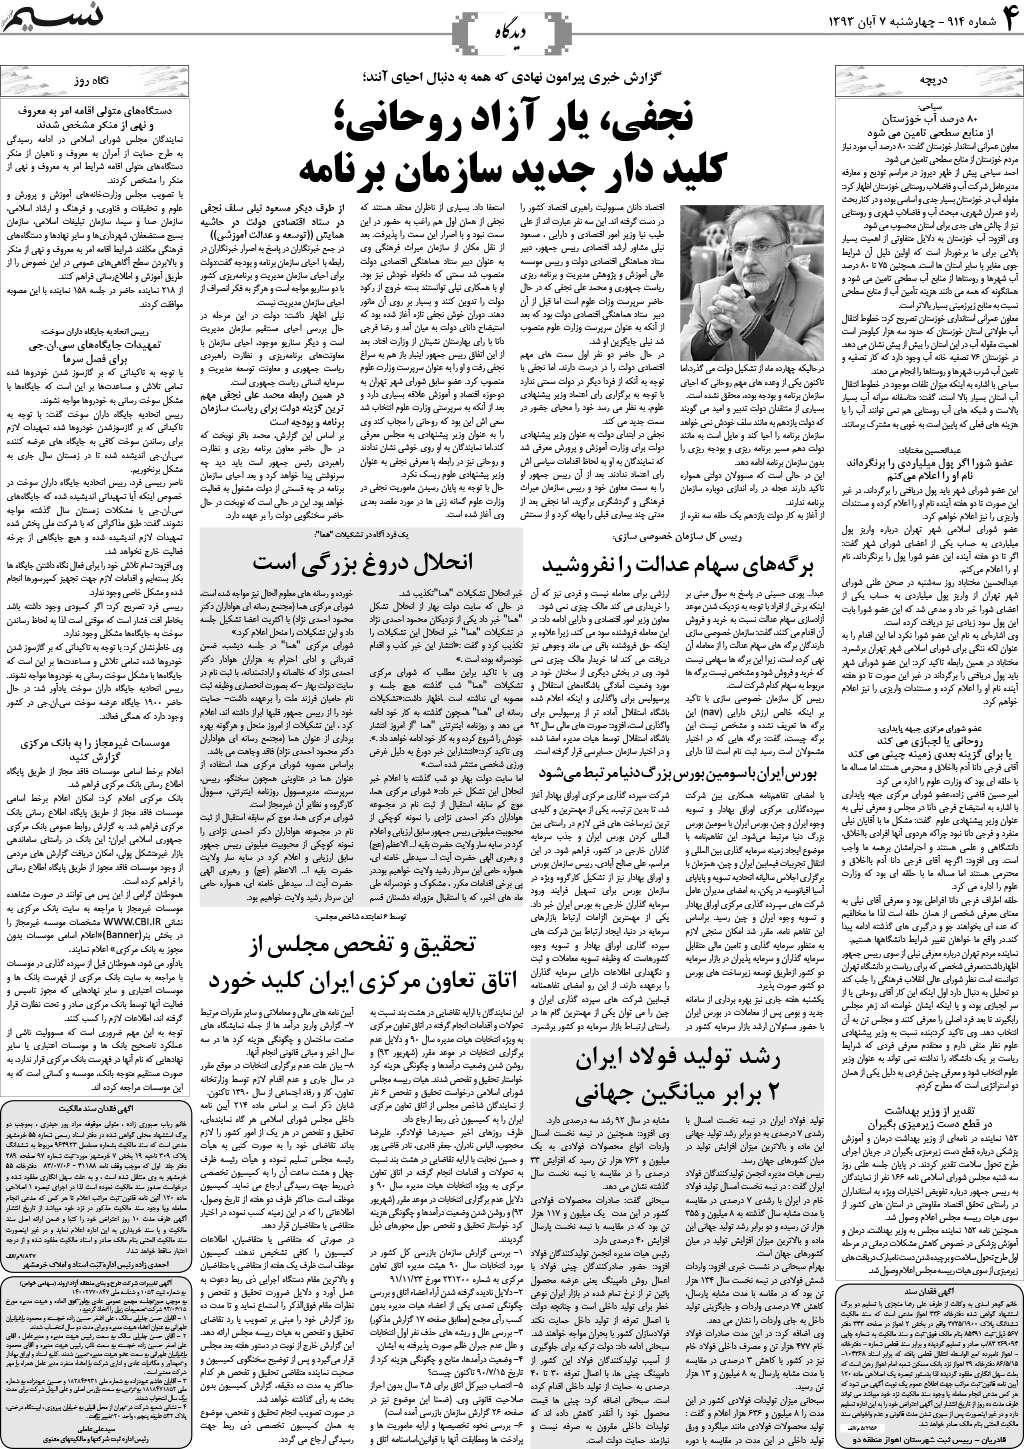 صفحه دیدگاه روزنامه نسیم شماره 914